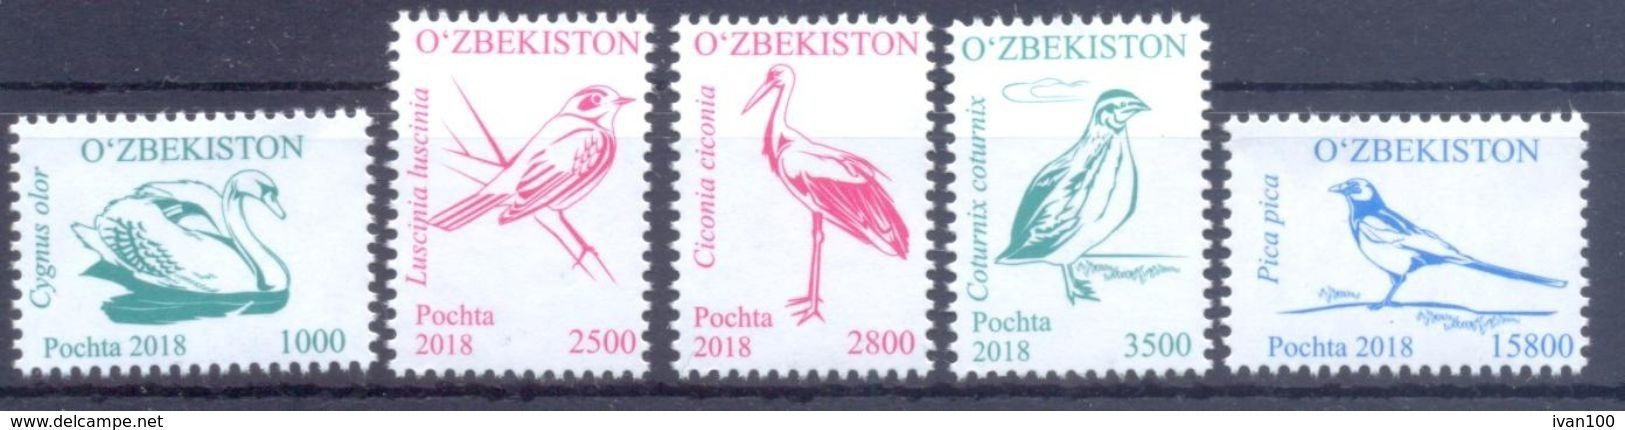 2018. Uzbekistan, Definitives, Birds, Issue III, 5v, Mint/** - Uzbekistán